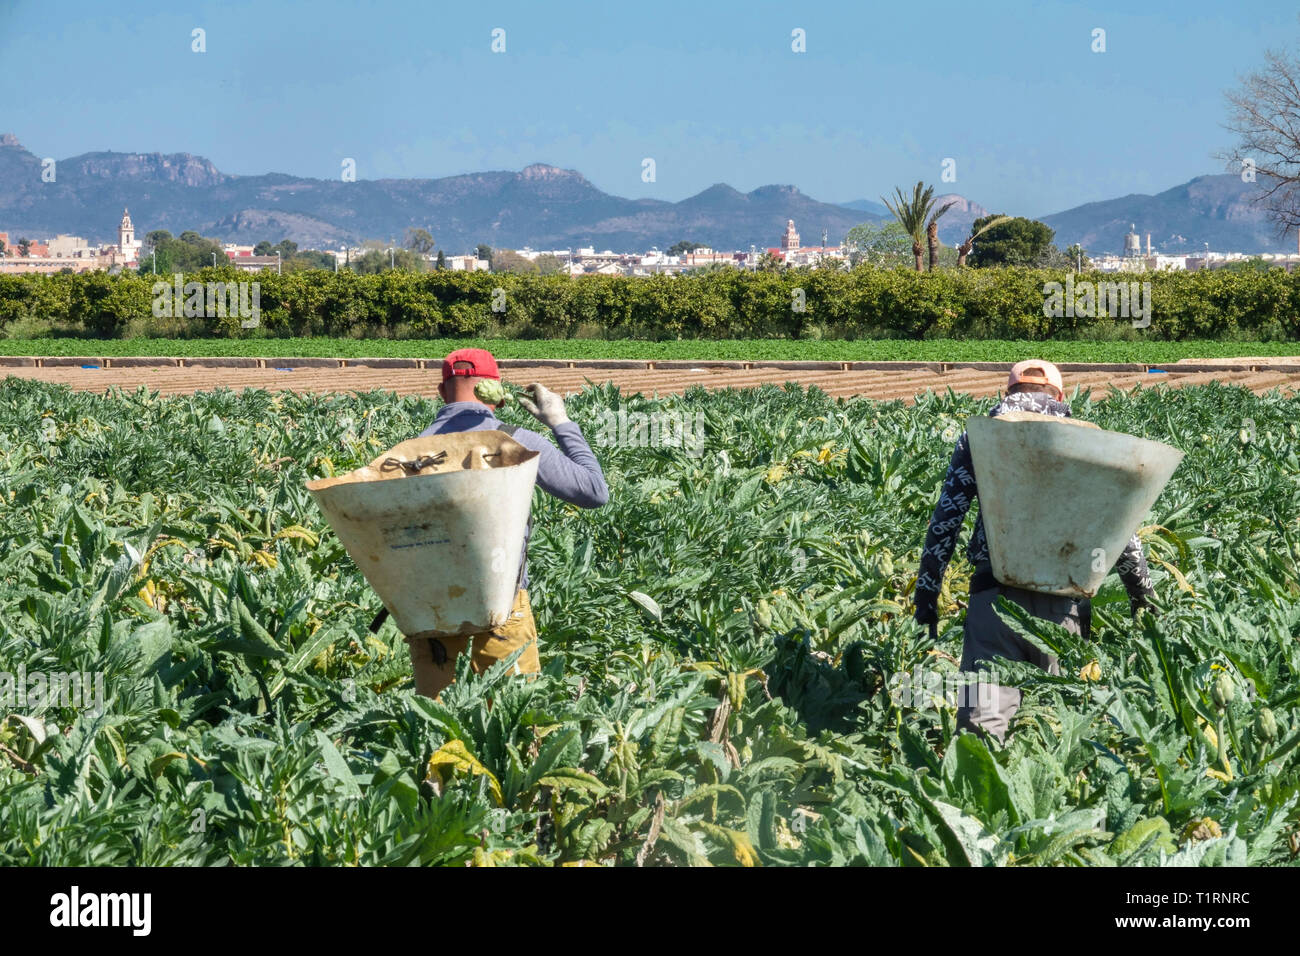 Deux hommes ouvriers récolte des artichauts Feld Agriculture travailleur agricole champ Artichaut récolte des terres agricoles rurales région Valence Espagne Europe Banque D'Images